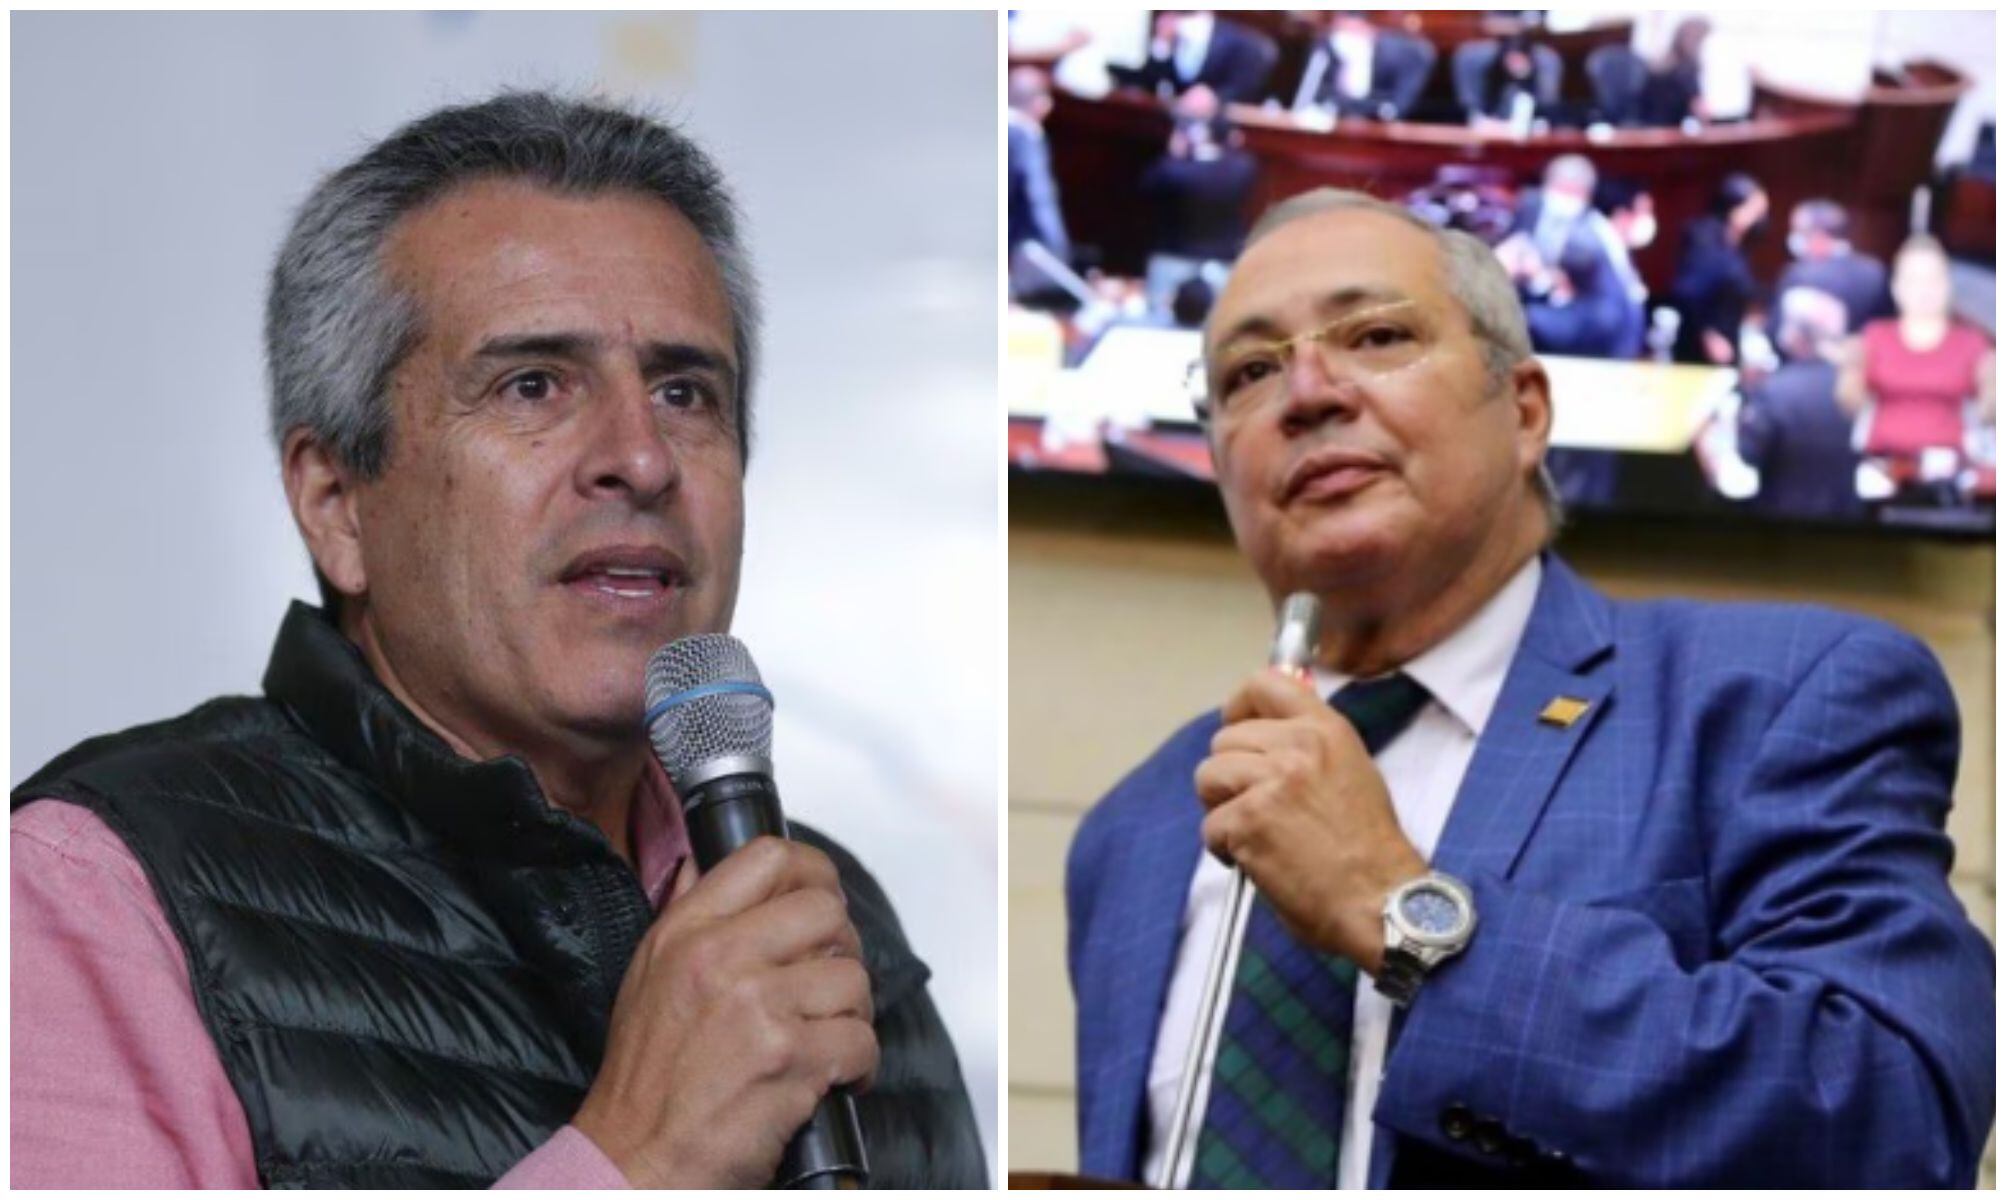 Iván Name y Luis Fernando Velasco anunciaron acercamientos de cara al nuevo periodo legislativo que se aproxima. Foto: Infobae Colombia